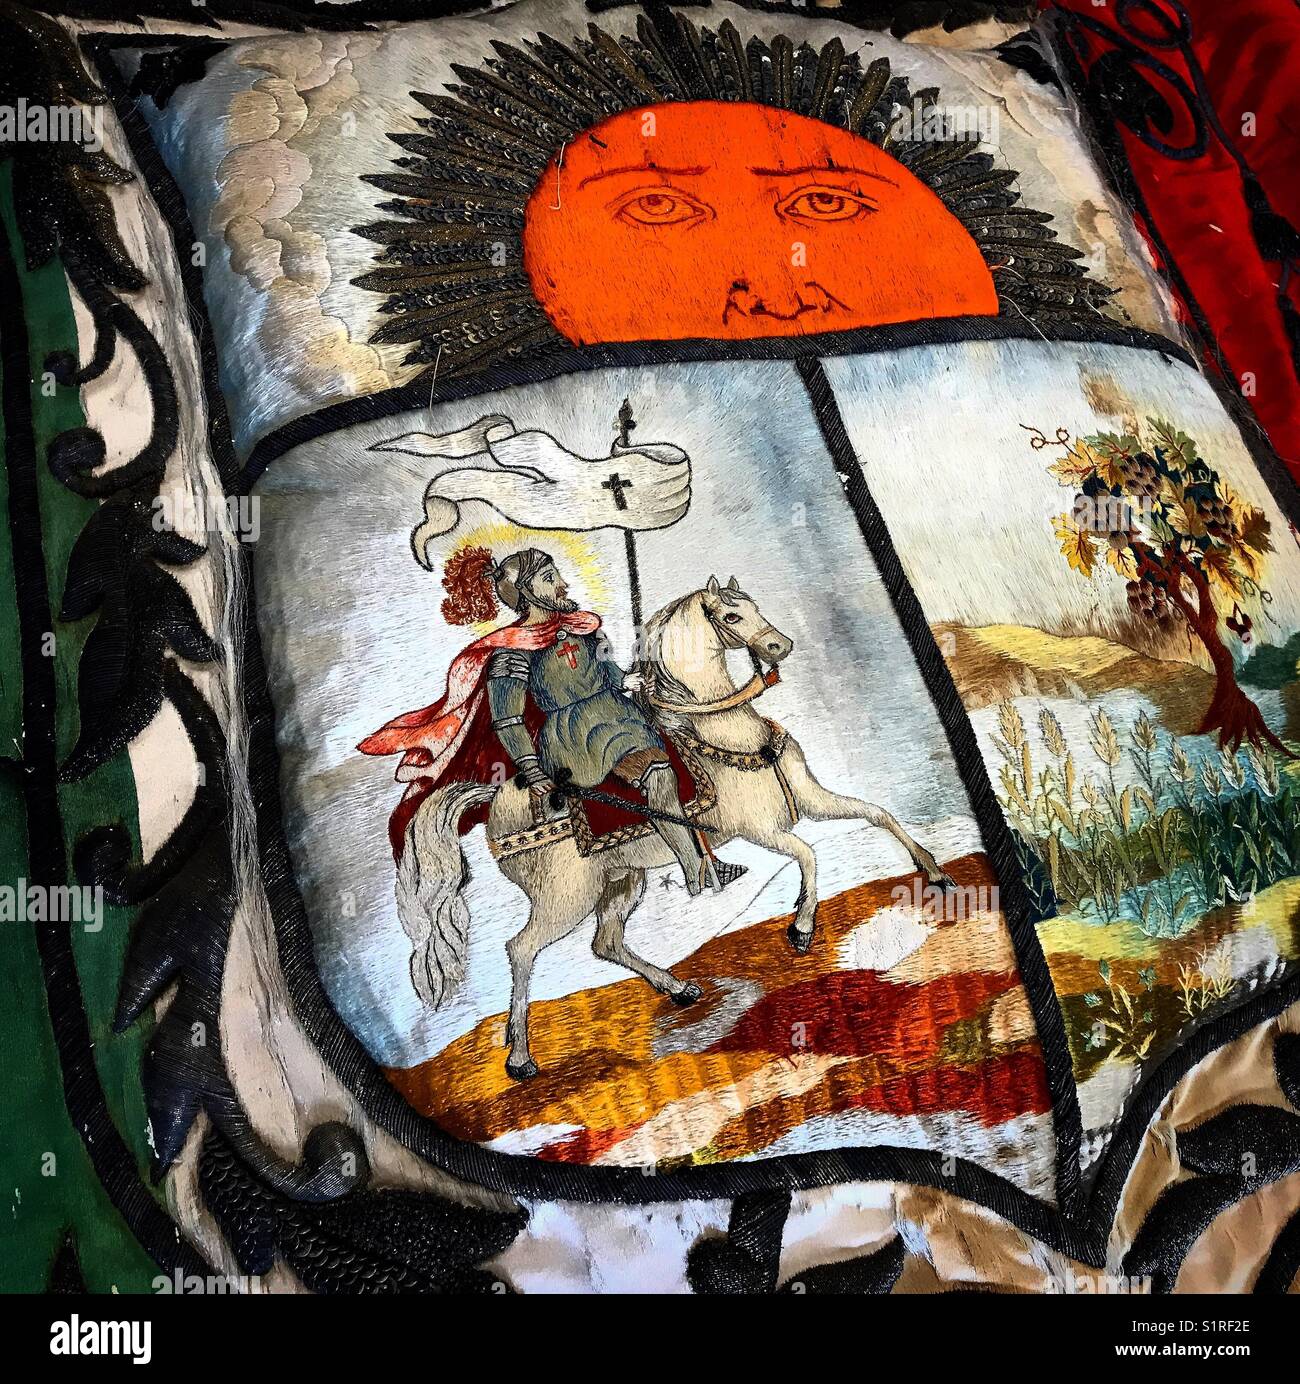 A cushion with the coat of arms of the city of Santiago de Queretaro shows a rising sun, a tree and Saint James Apostle in Museo de Arte Sacro museum in Queretaro, Mexico Stock Photo